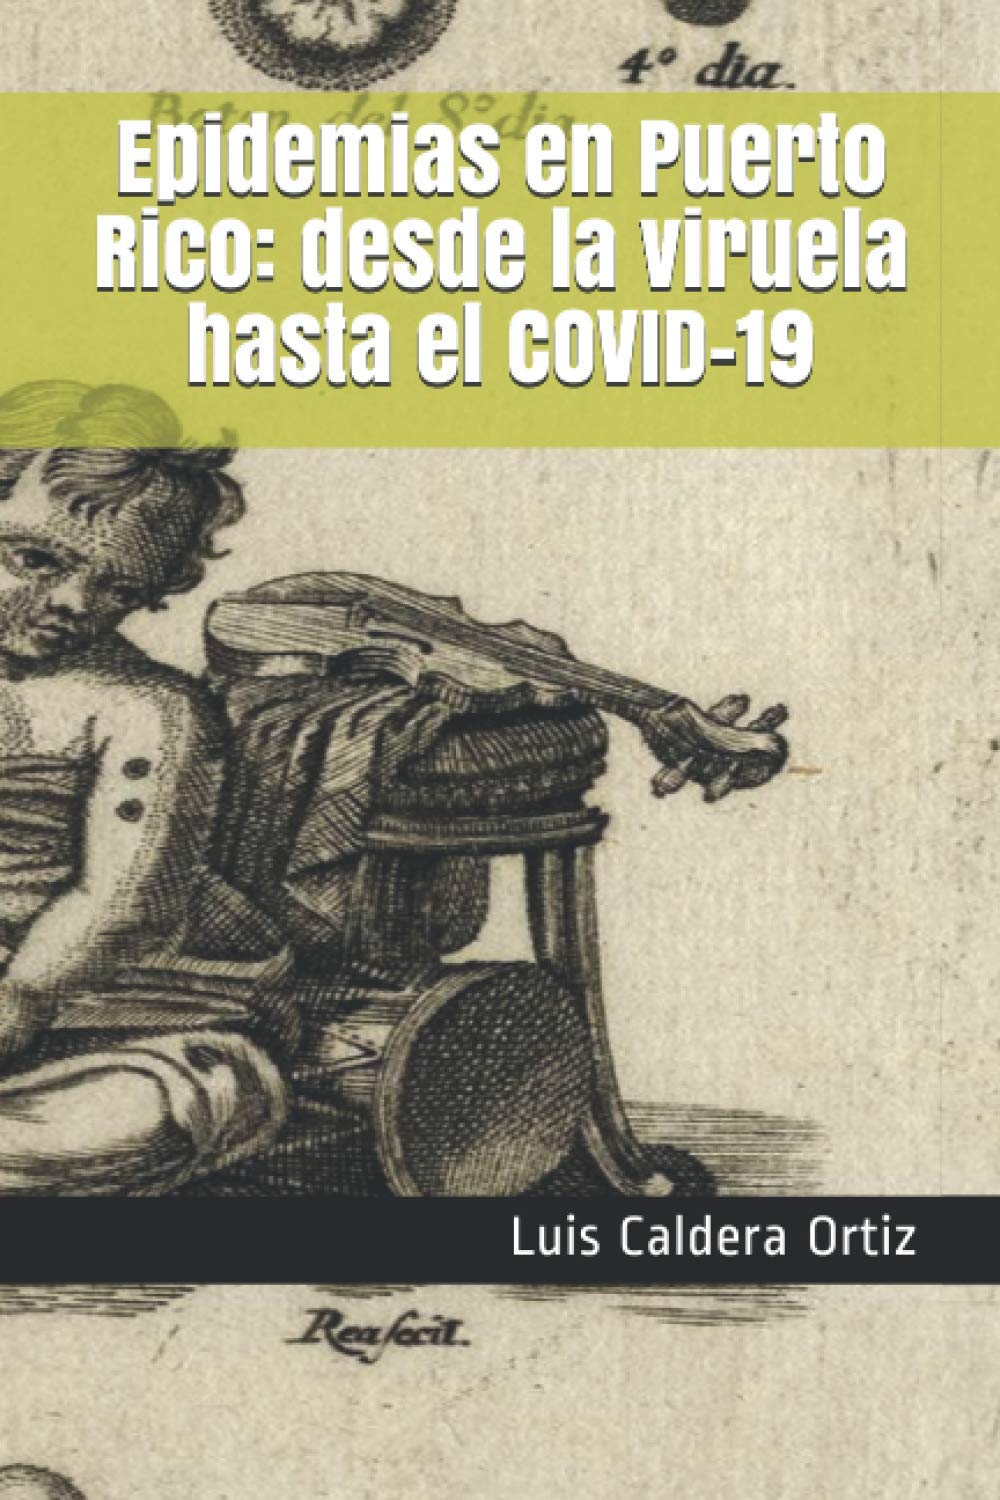 EPIDEMIAS EN PUERTO RICO: DESDE LA VIRUELA HASTA EL COVID-19 - Luis Caldera Ortiz